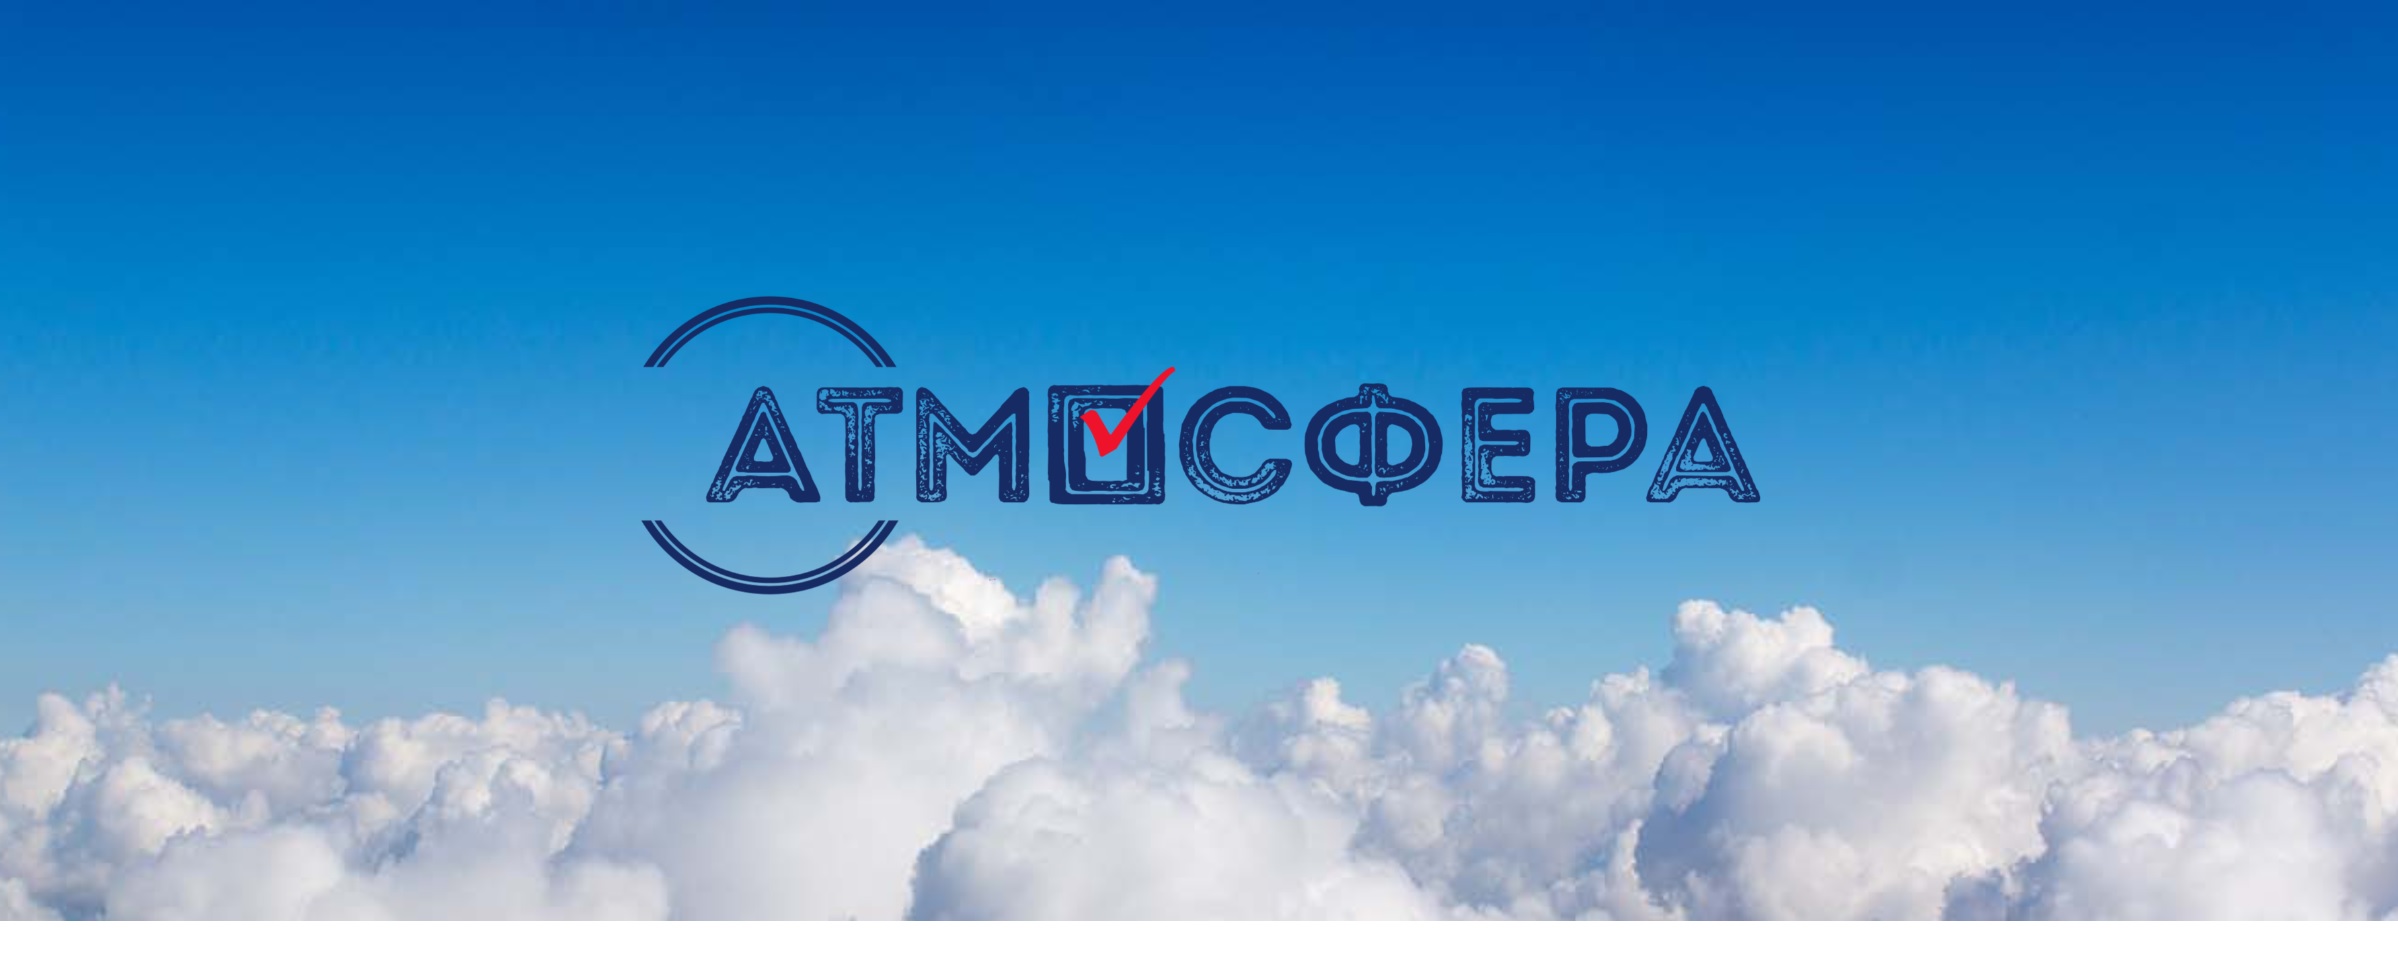 Всероссийский конкурс "Атмосфера"